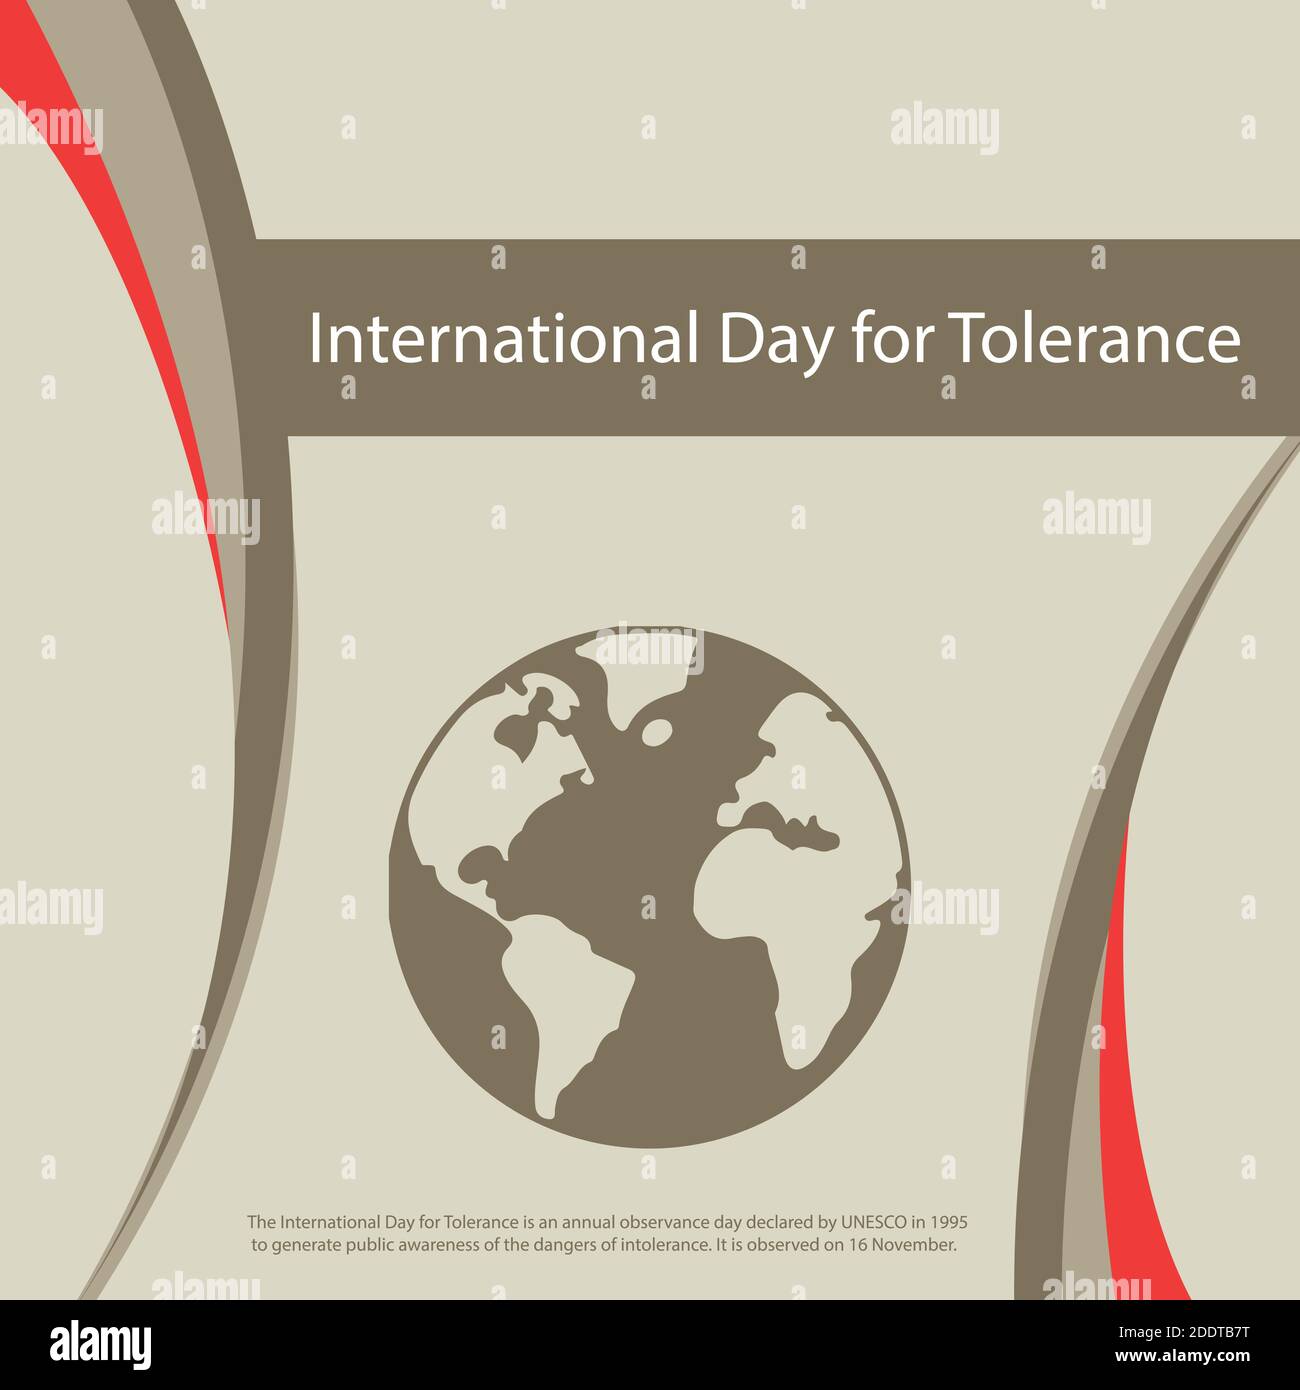 La Journée internationale de la tolérance est une journée annuelle de célébration déclarée par l'UNESCO en 1995 pour sensibiliser le public aux dangers de l'intolérance. Illustration de Vecteur